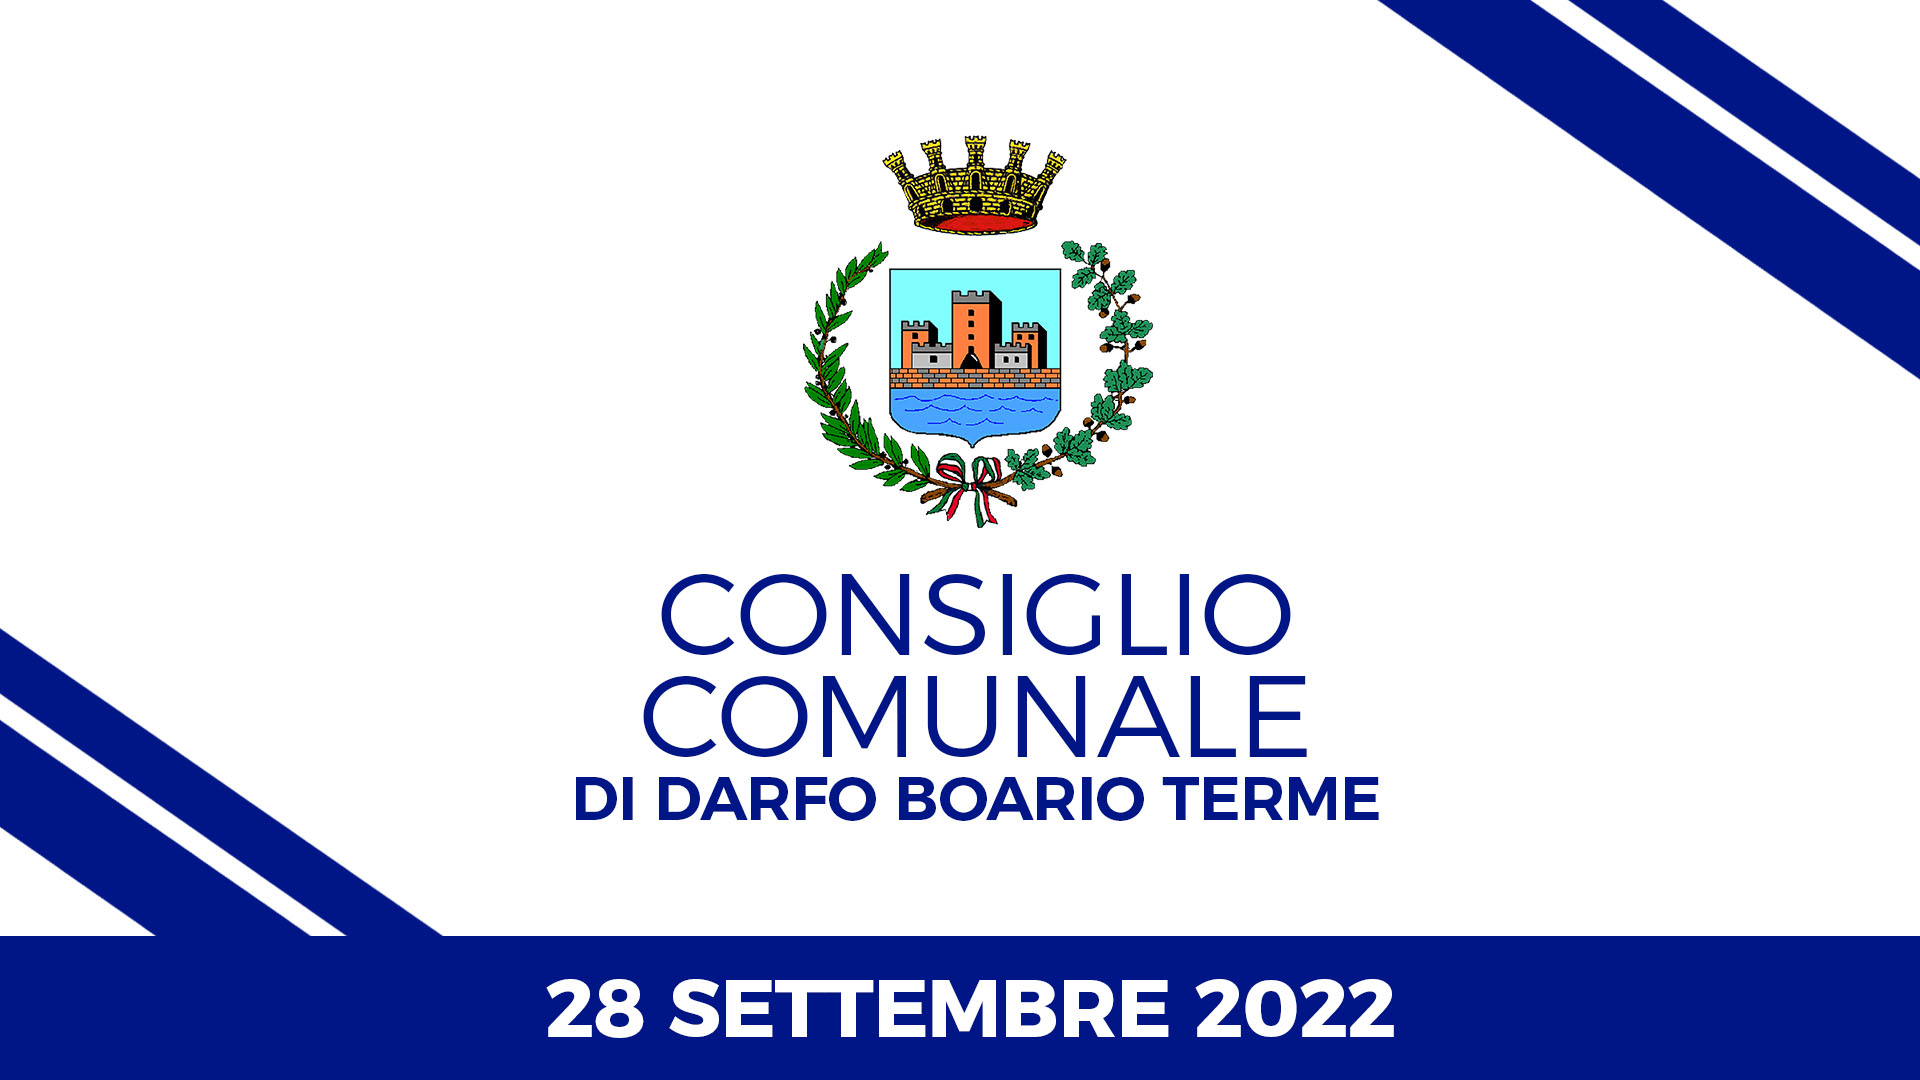 Consiglio Comunale di Darfo Boario Terme del 28 settembre 2022